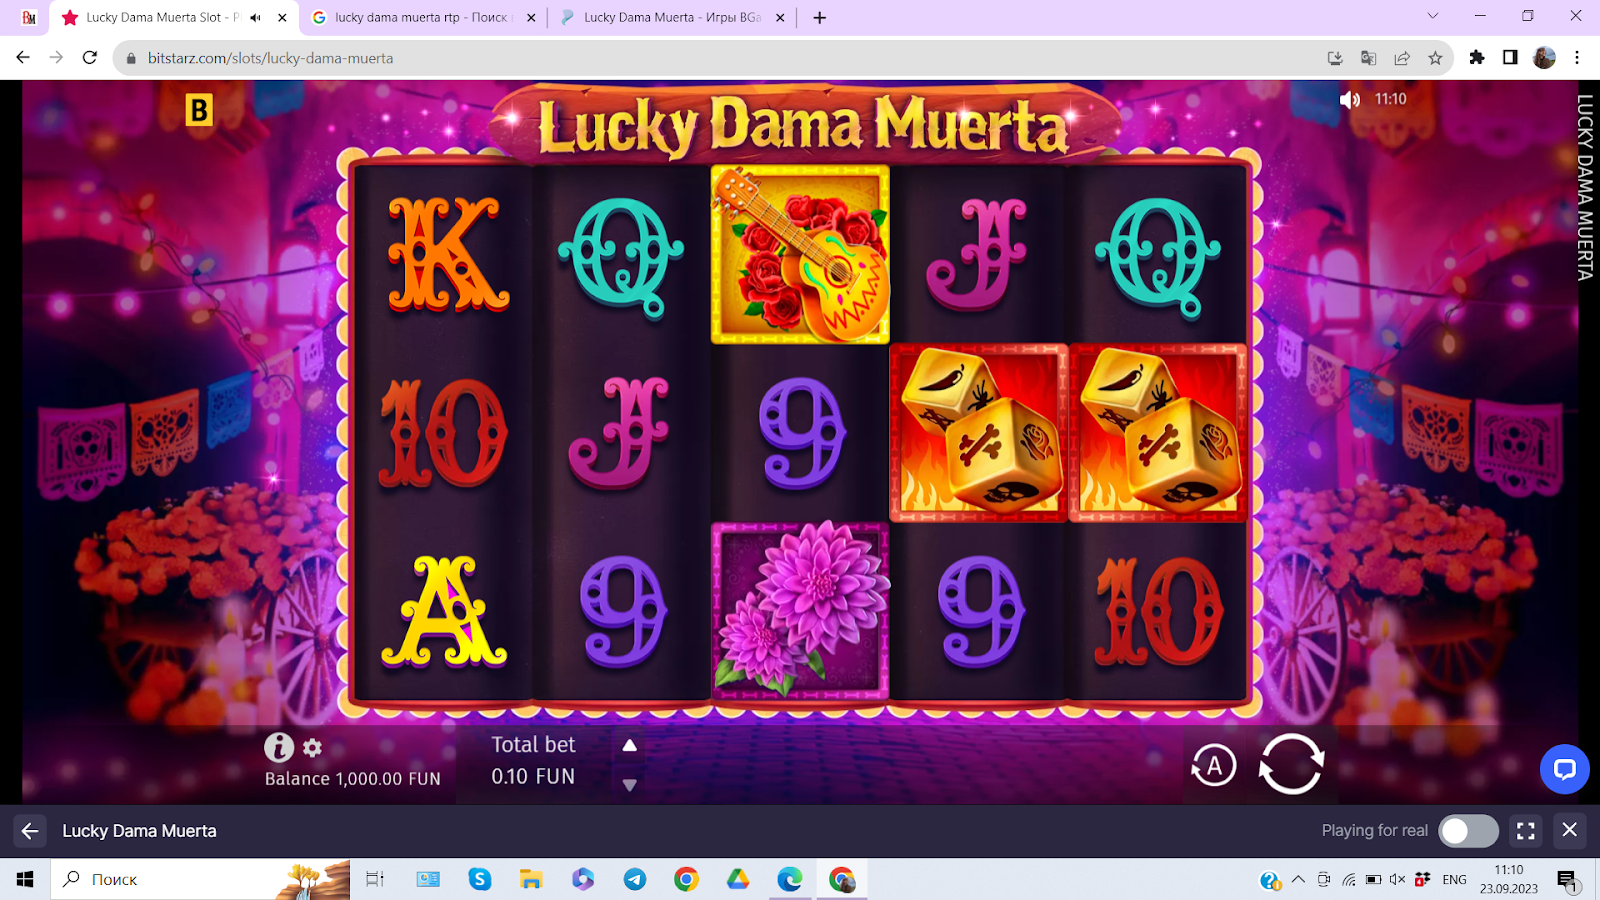 Lucky Dama Muerta slot machine